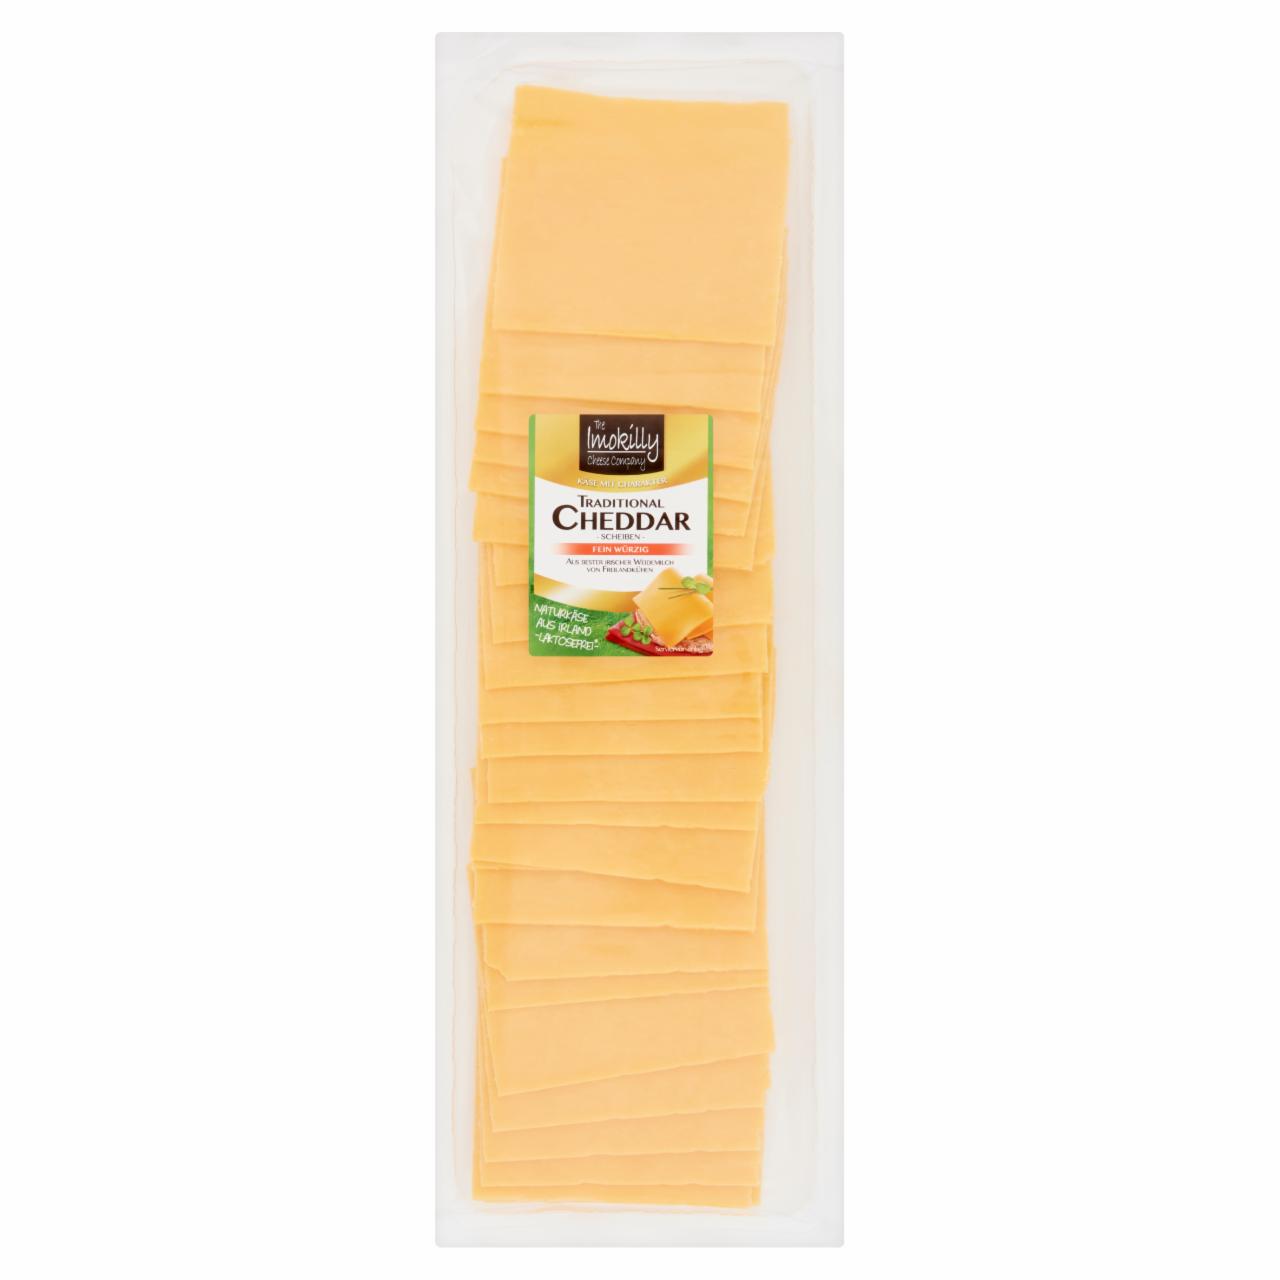 Képek - The Imokilly Cheese Company szeletelt, vörös, zsíros, kemény cheddar sajt 500 g